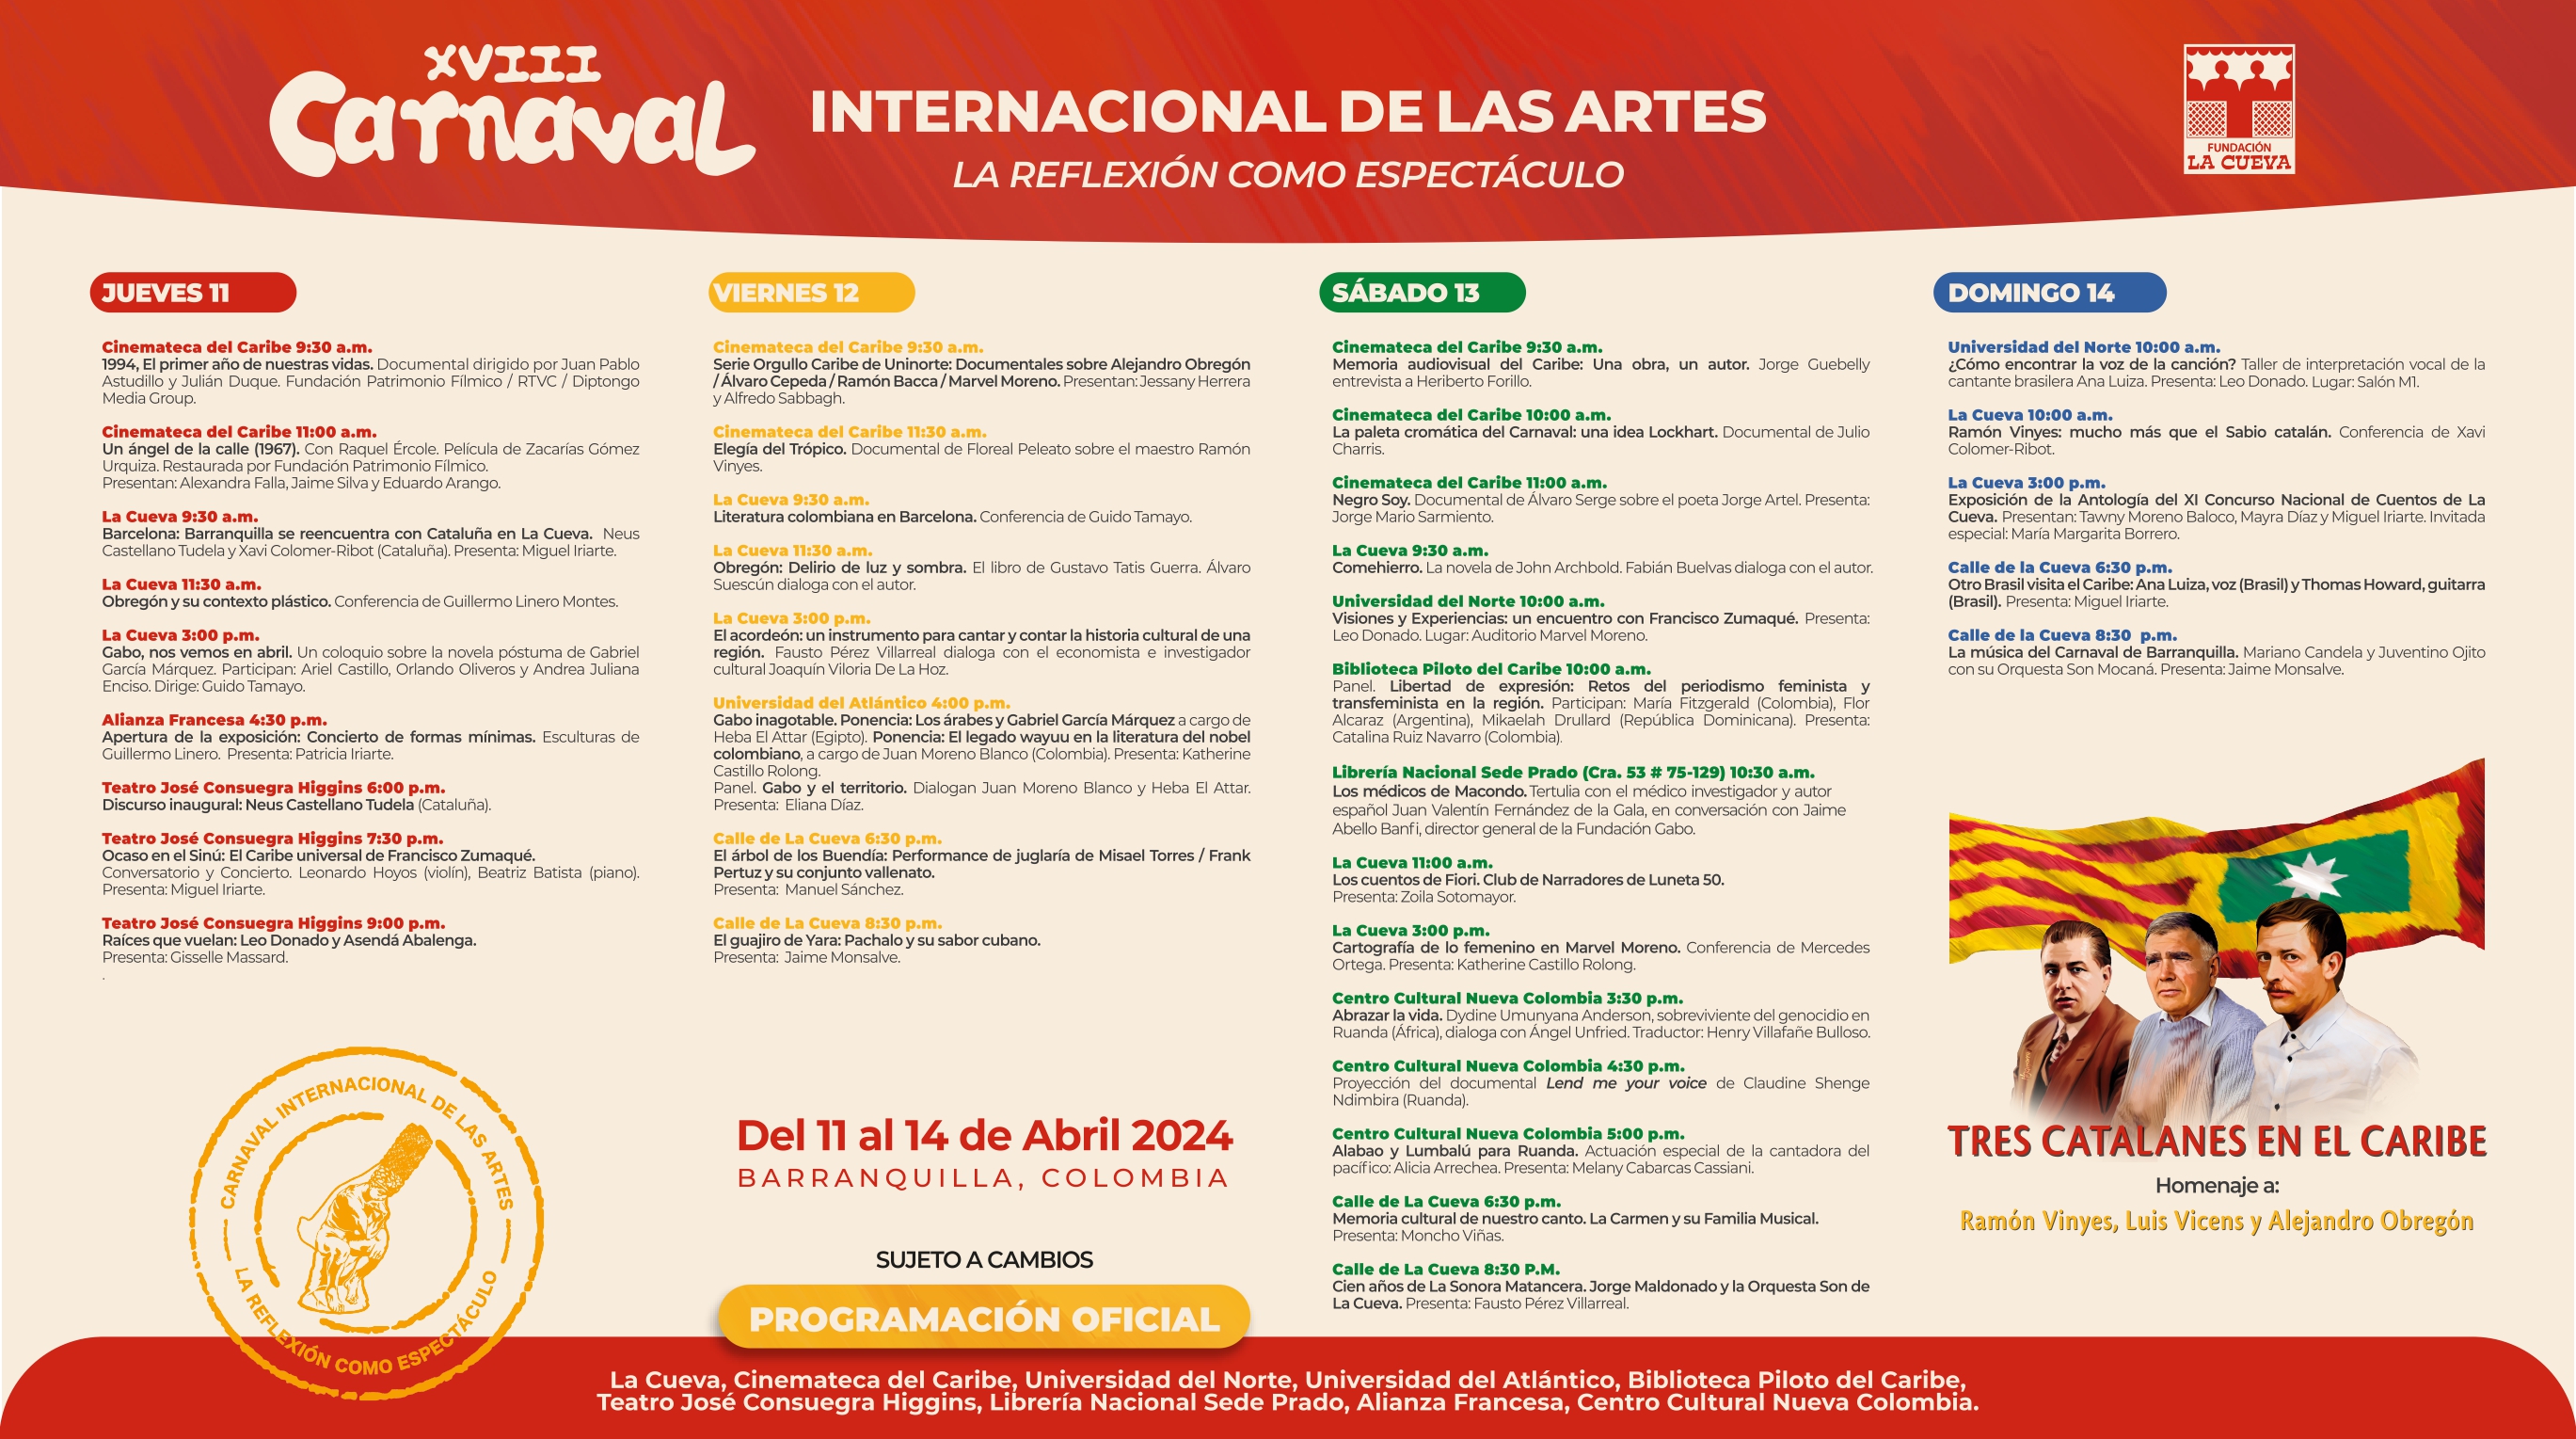 Programación del Carnaval Internacional de las Artes.